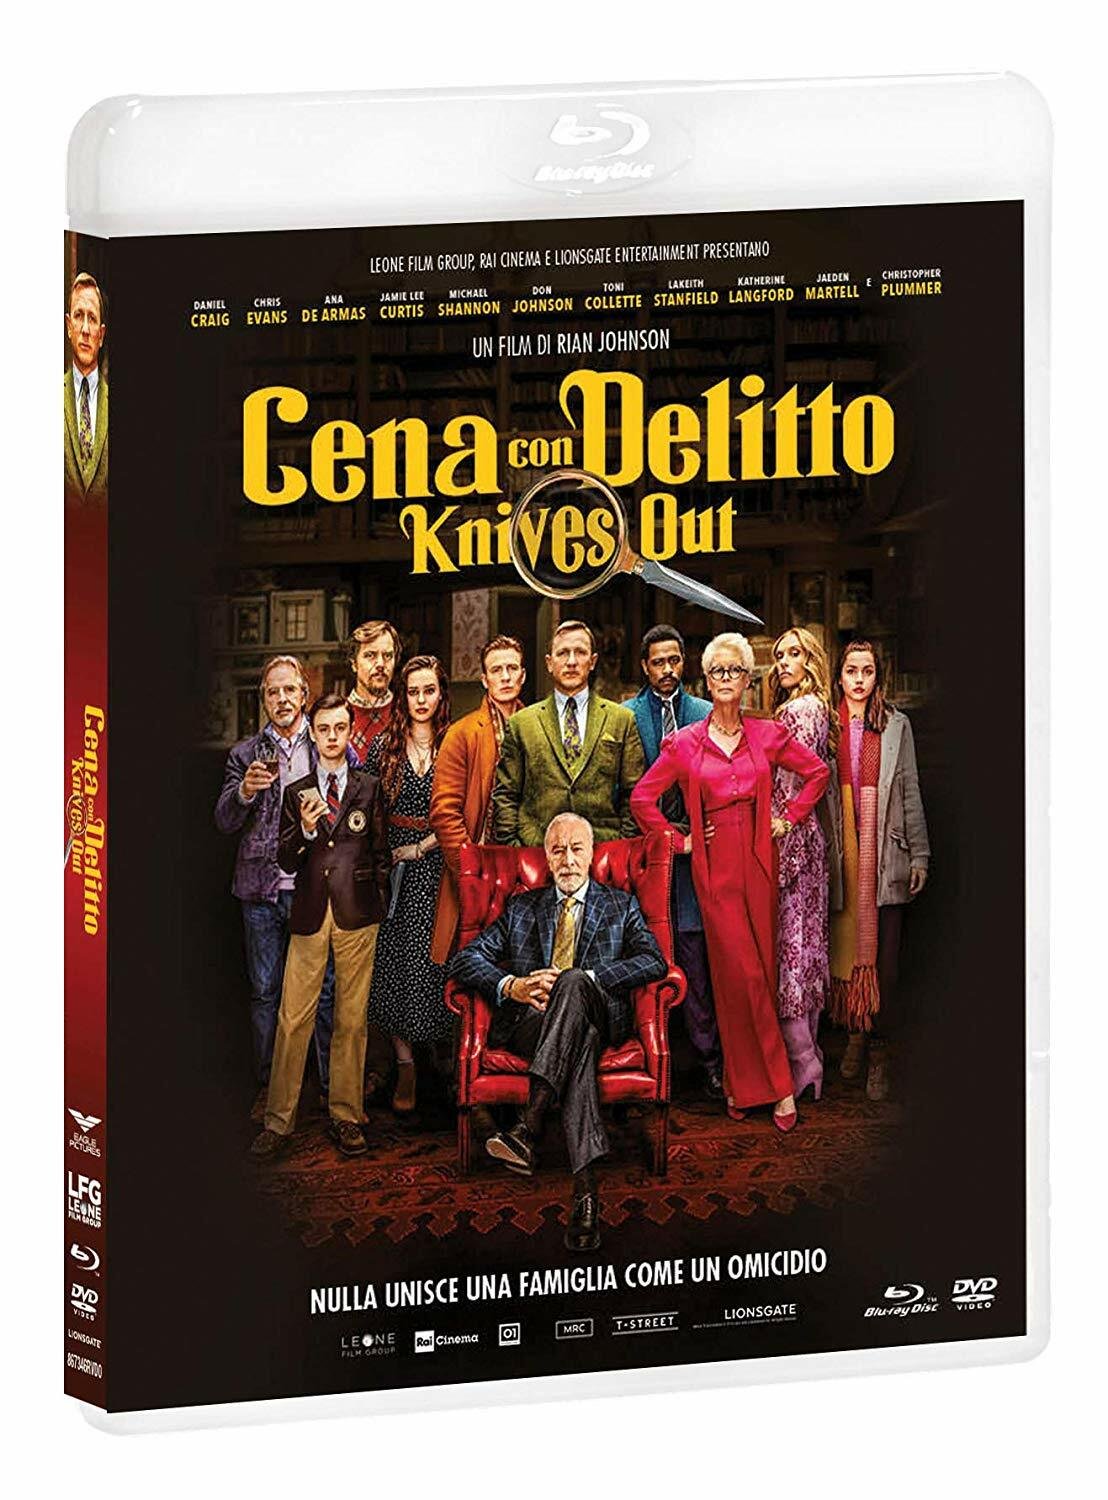 Il cast in posa nella copertina del cofanetto Blu-ray di Cena con delitto